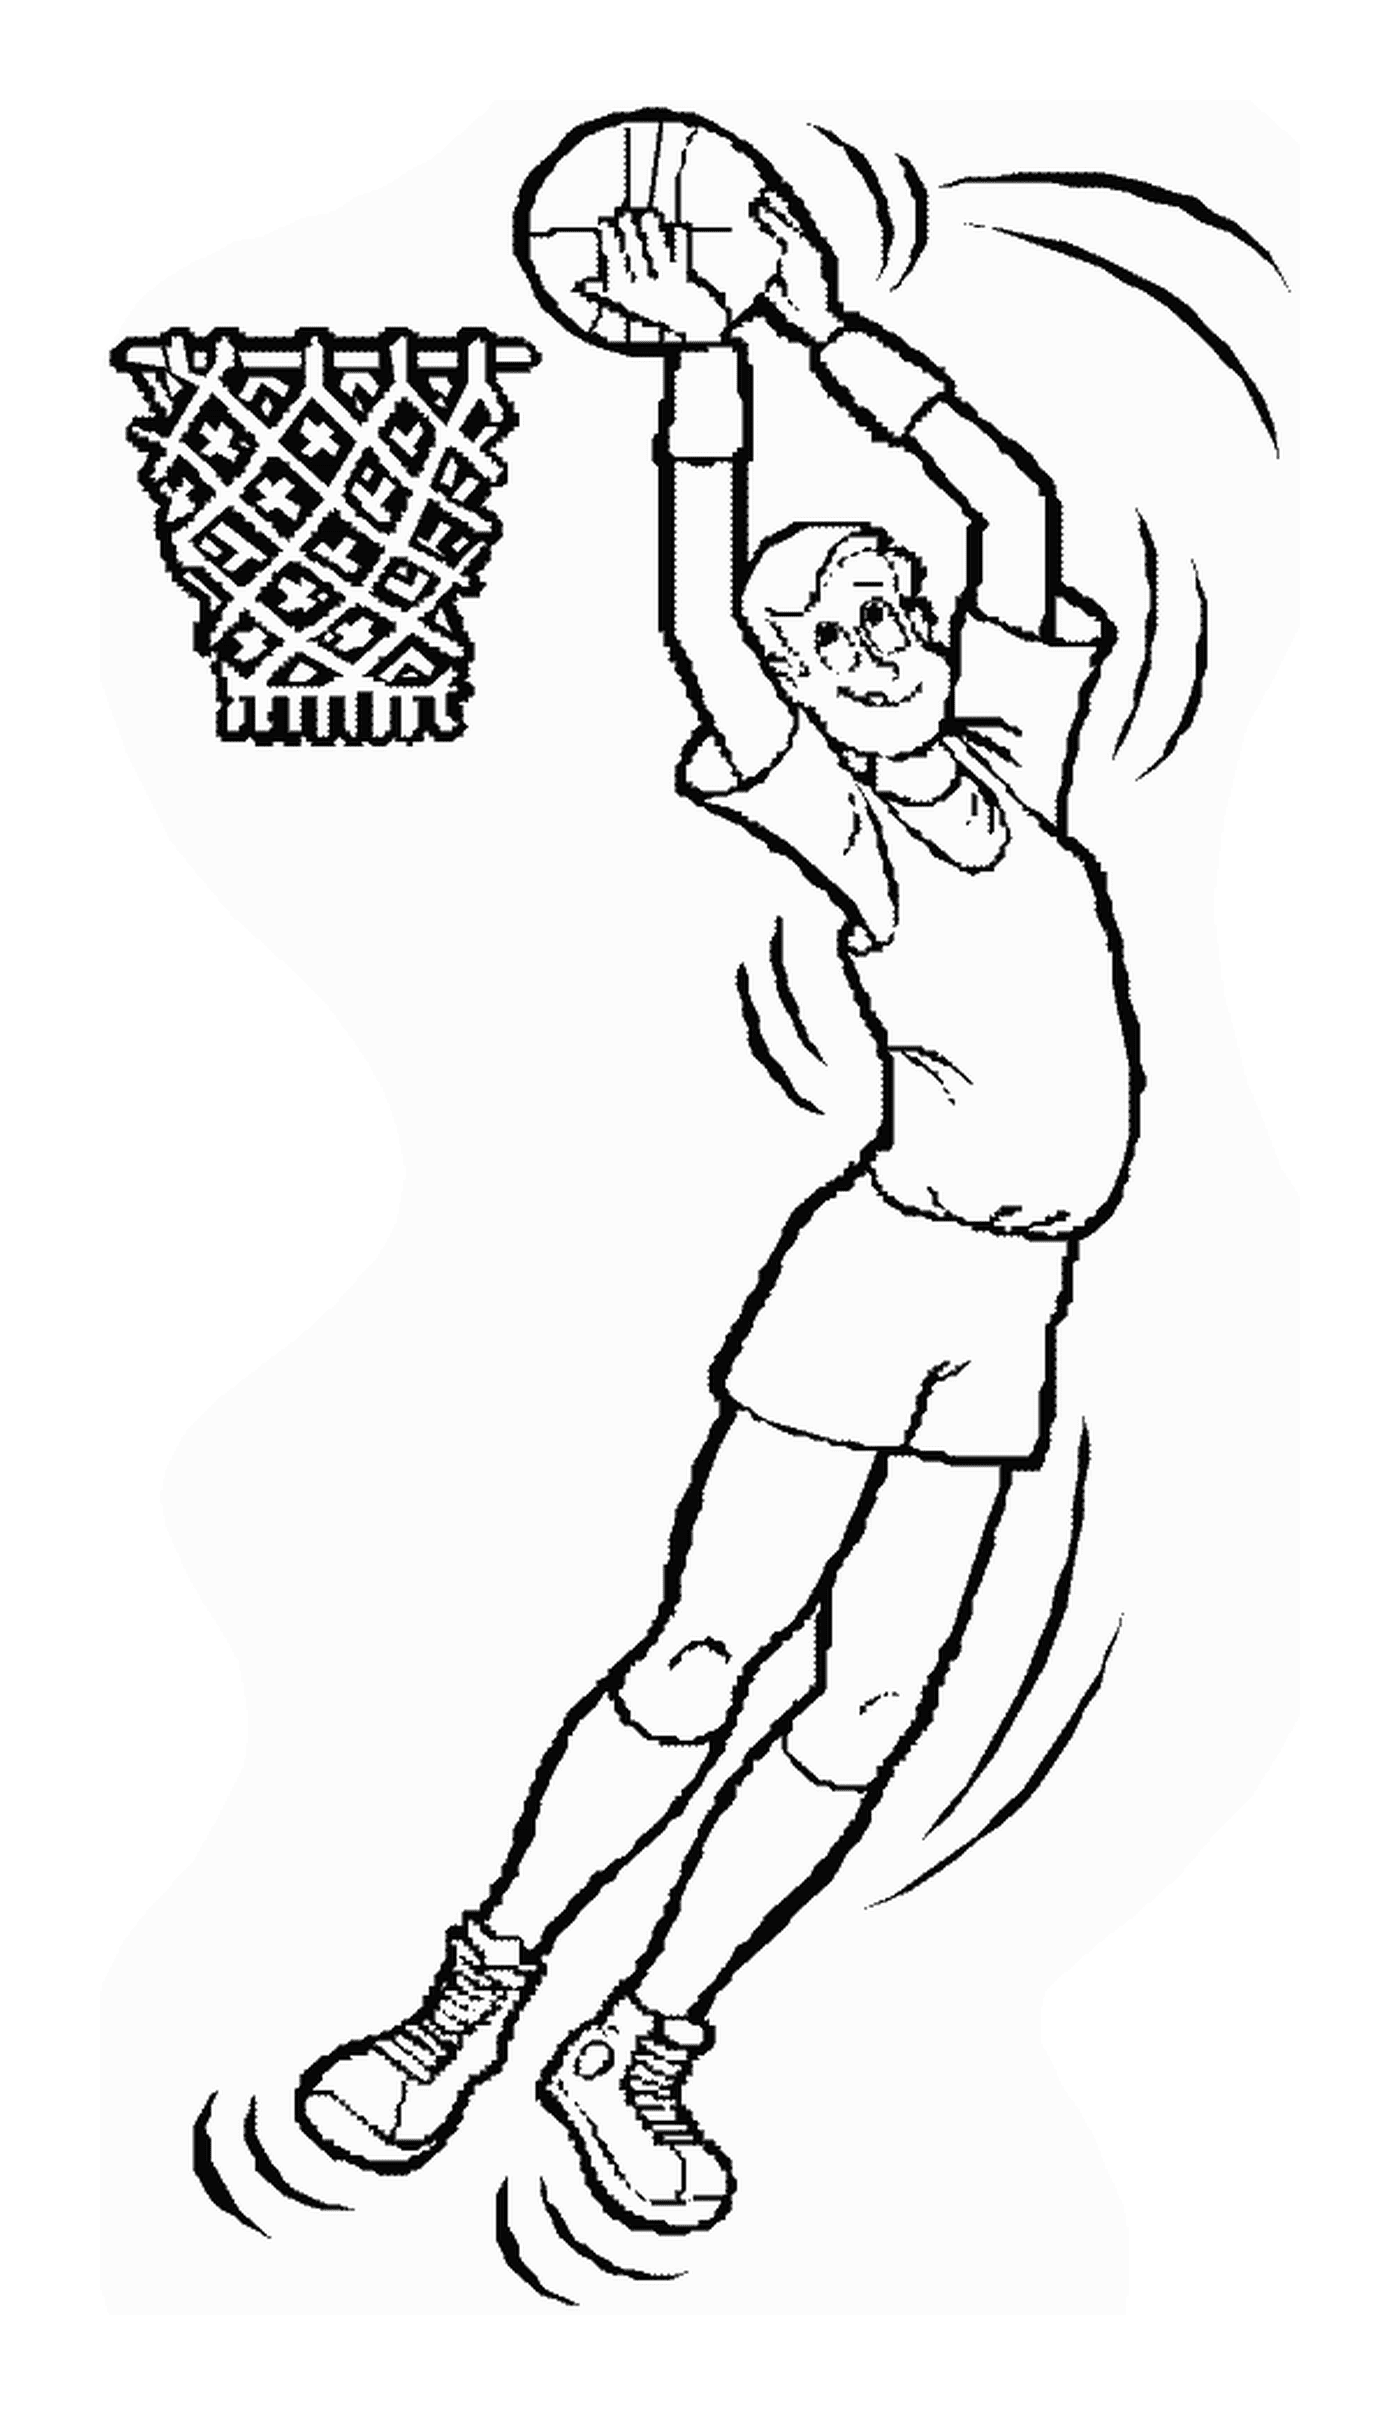  Ein Mann springt, um einen Basketballball zu schlagen 